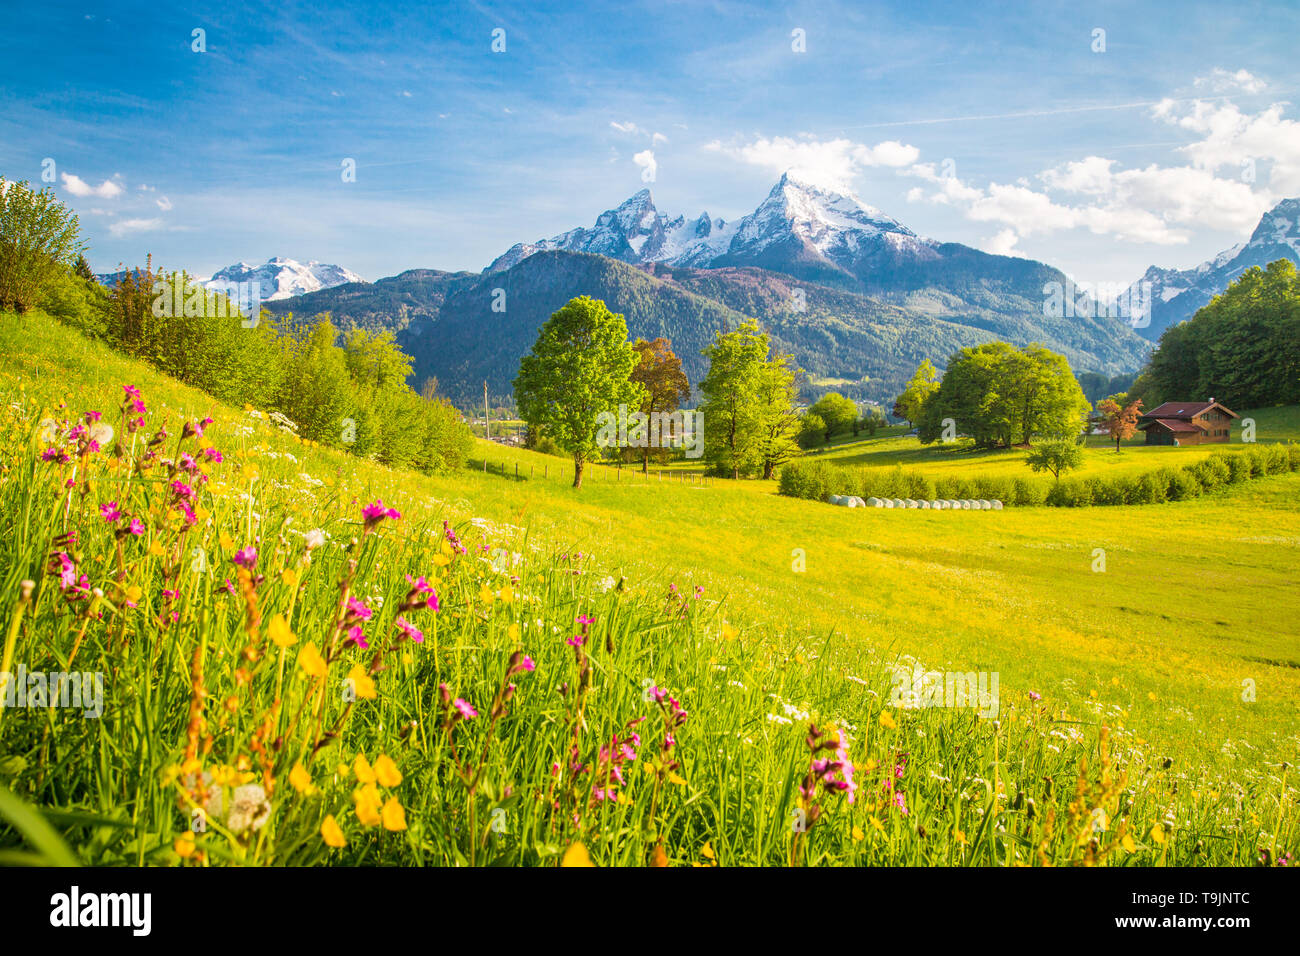 Preciosas vistas del idílico paisaje alpino de montaña con prados en flor y los picos nevados de las montañas en un hermoso día soleado con el cielo azul en la primavera Foto de stock